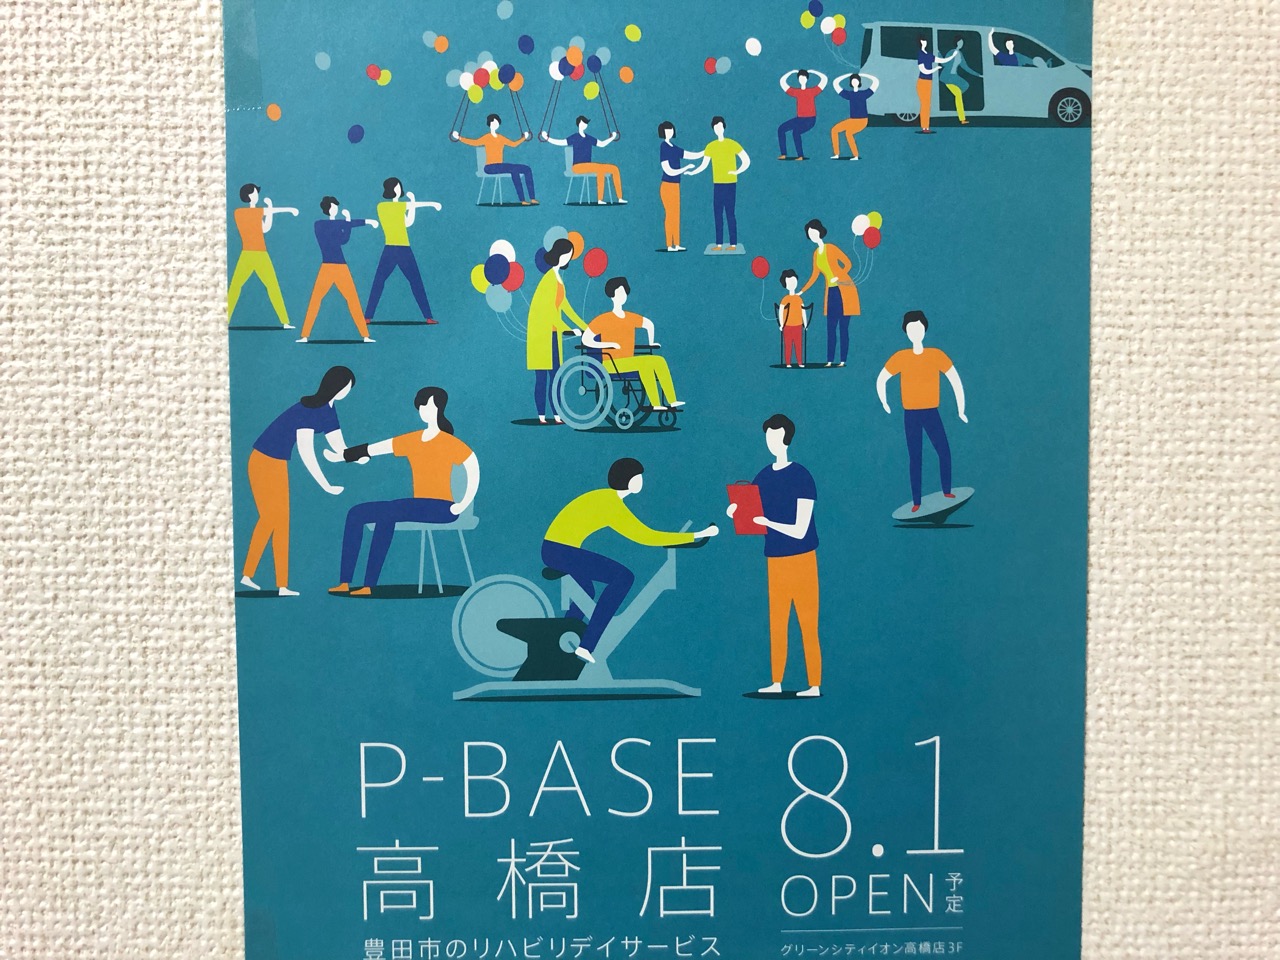 2019年8月1日イオン高橋店にオープン予定のP-BASE